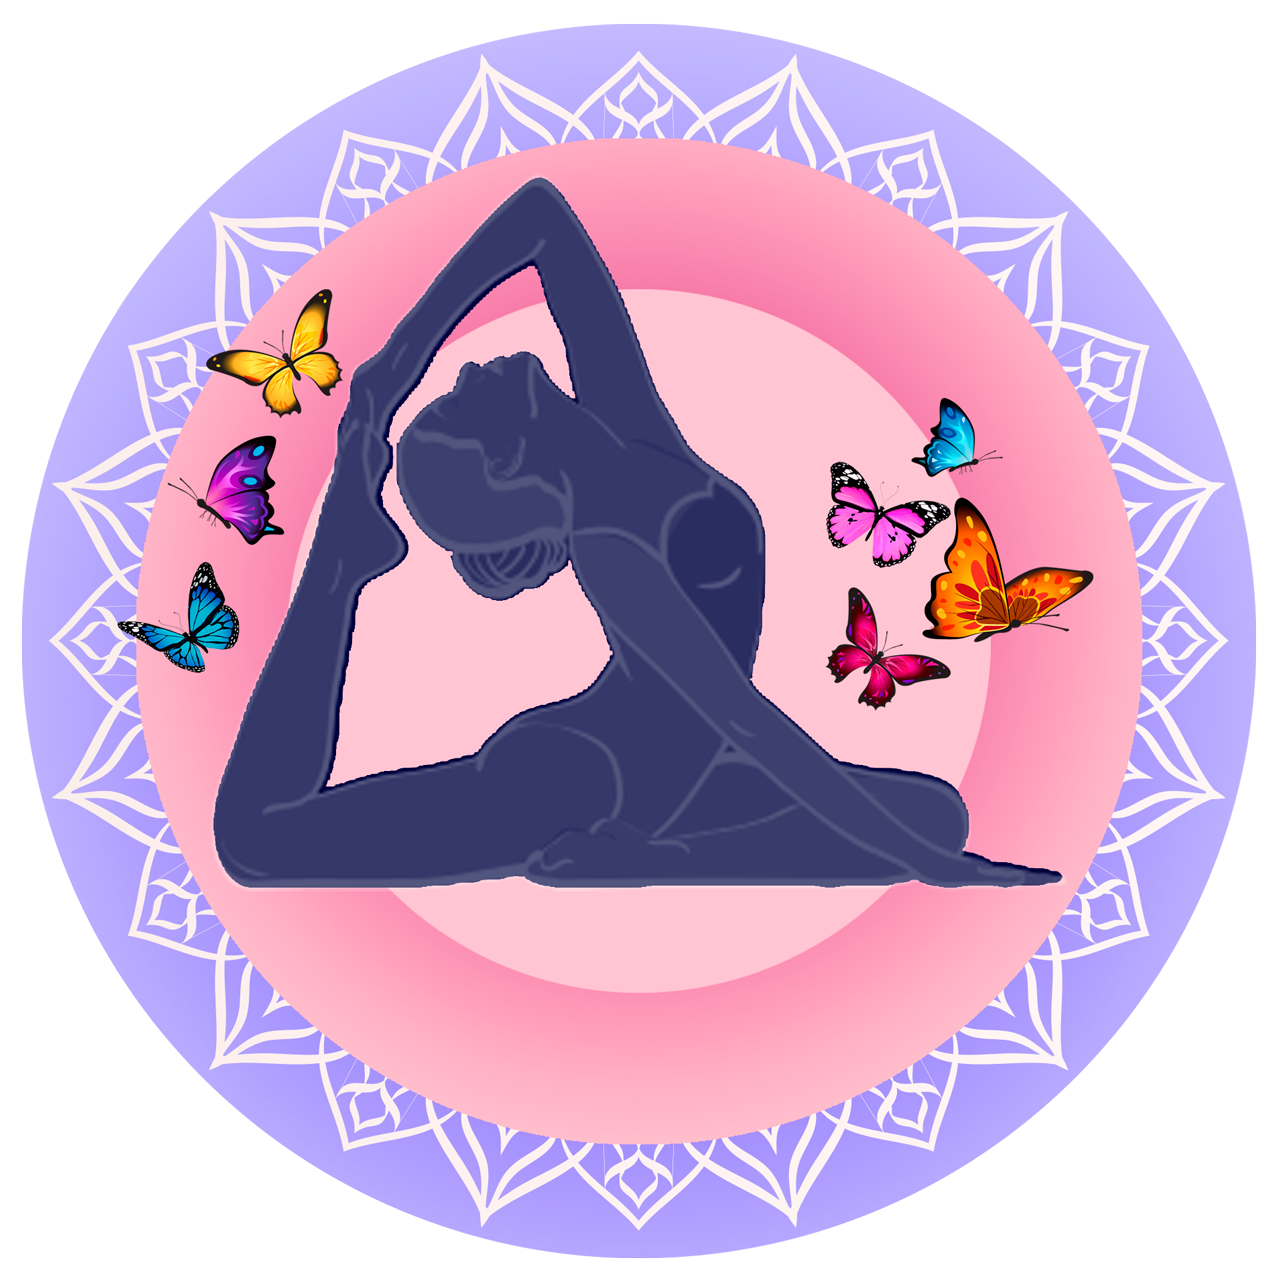 Ana Fernandez Instructora de Yoga, Aeroyoga y Meditación